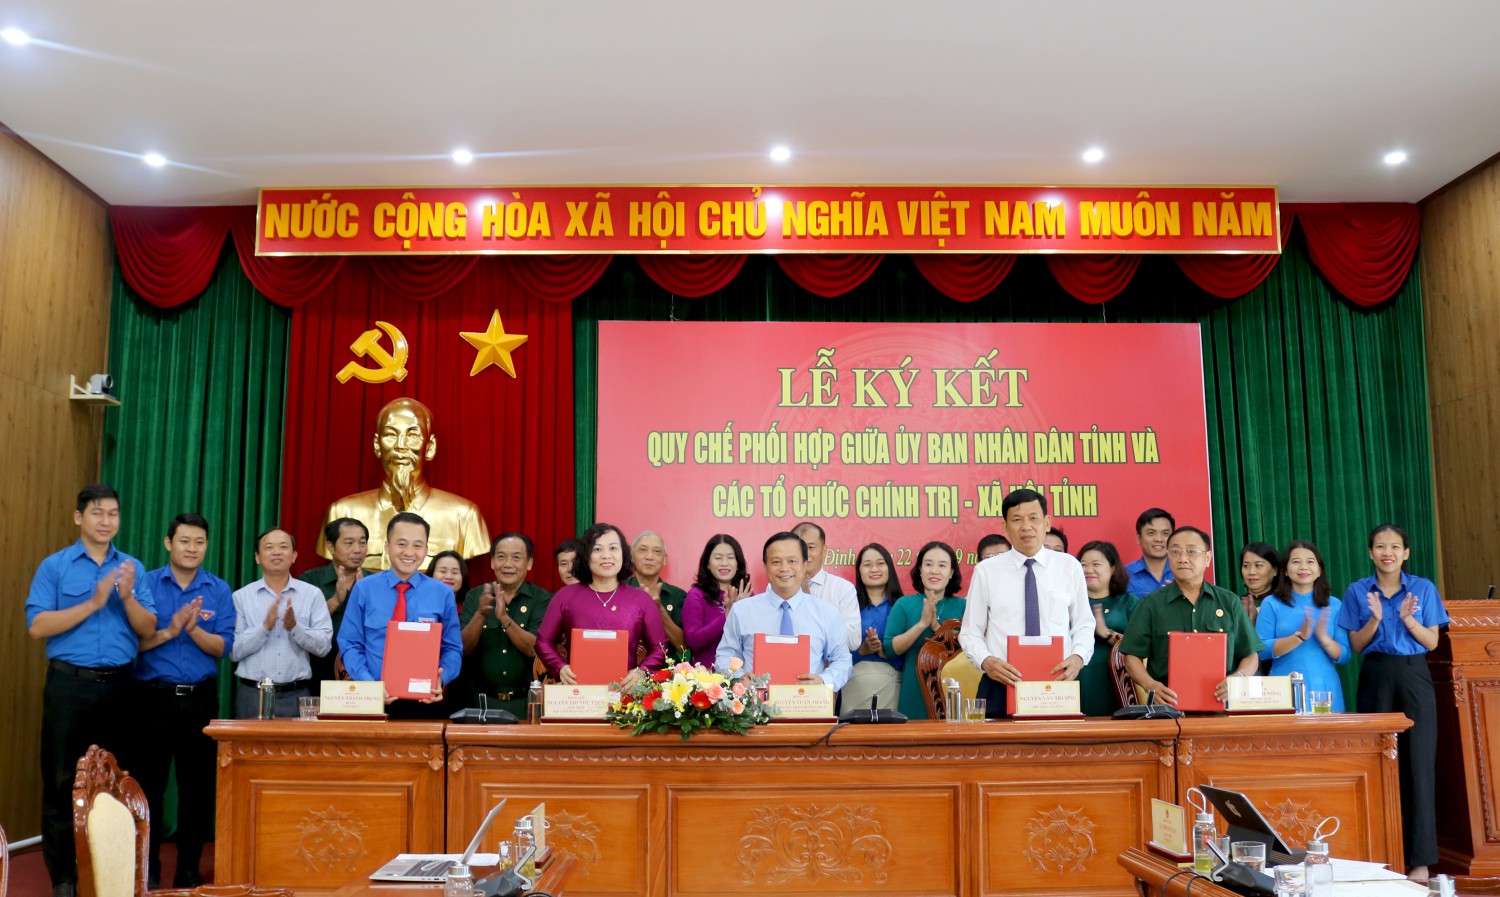 Lễ ký kết Quy chế phối hợp công tác giữa Ủy ban nhân dân tỉnh và các tổ chức chính trị - xã hội tỉnh